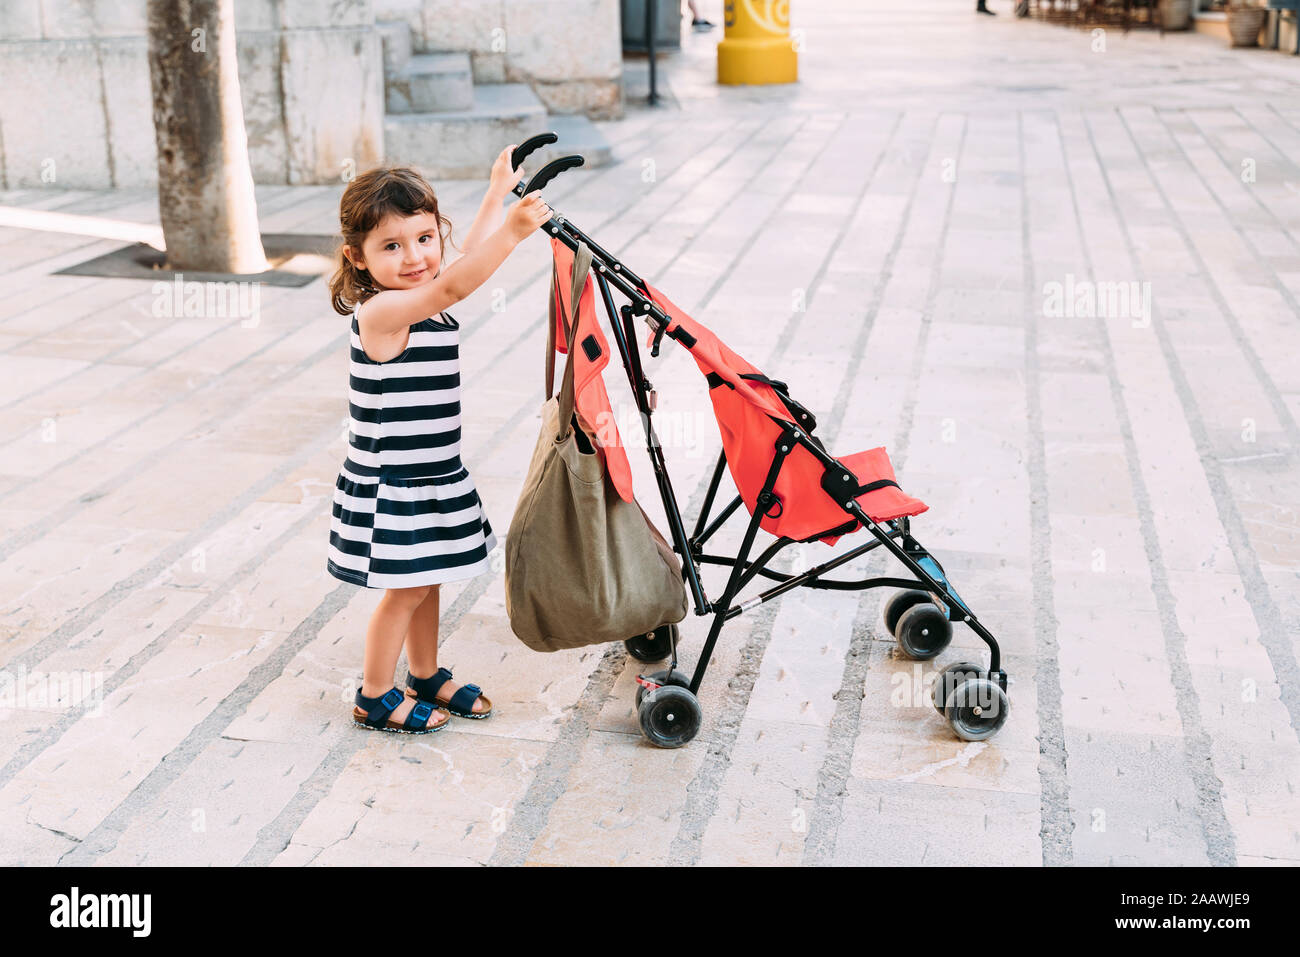 Portrait of smiling little girl pushing her stroller Stock Photo